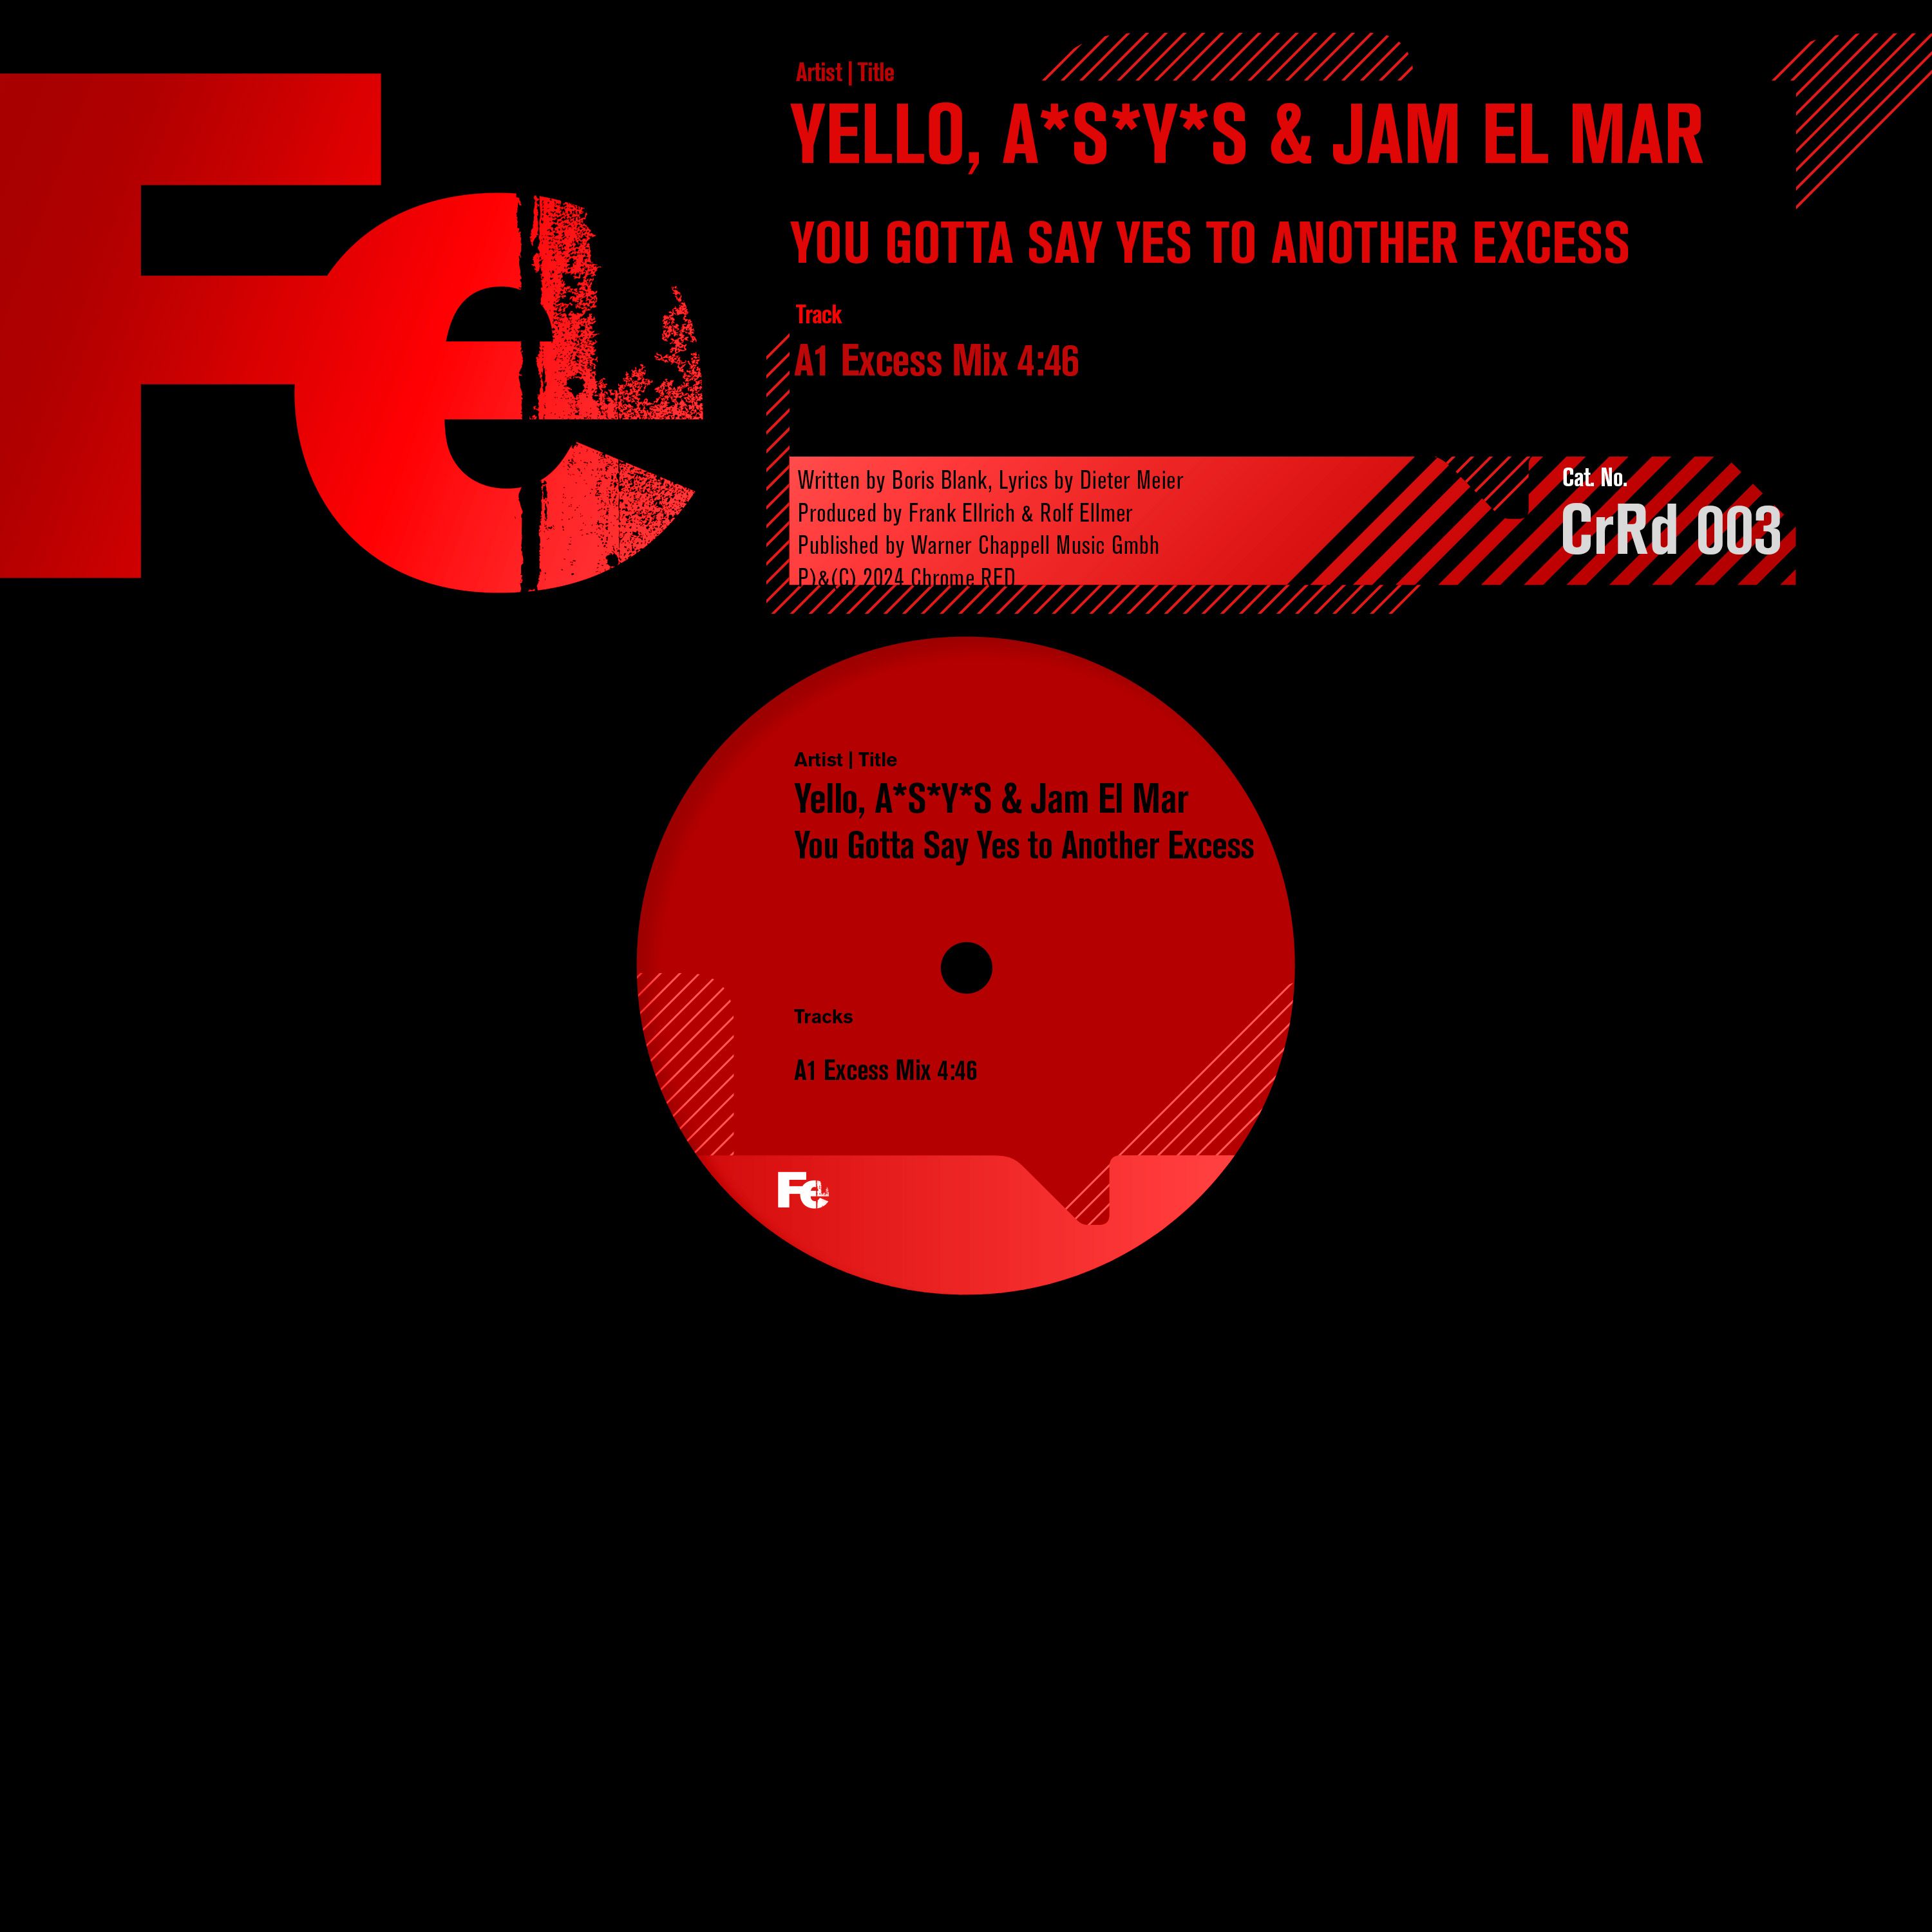 Yello, A*S*Y*S & Jam El Mar – You Gotta Say Yes To Another Excess (Excess Mix)